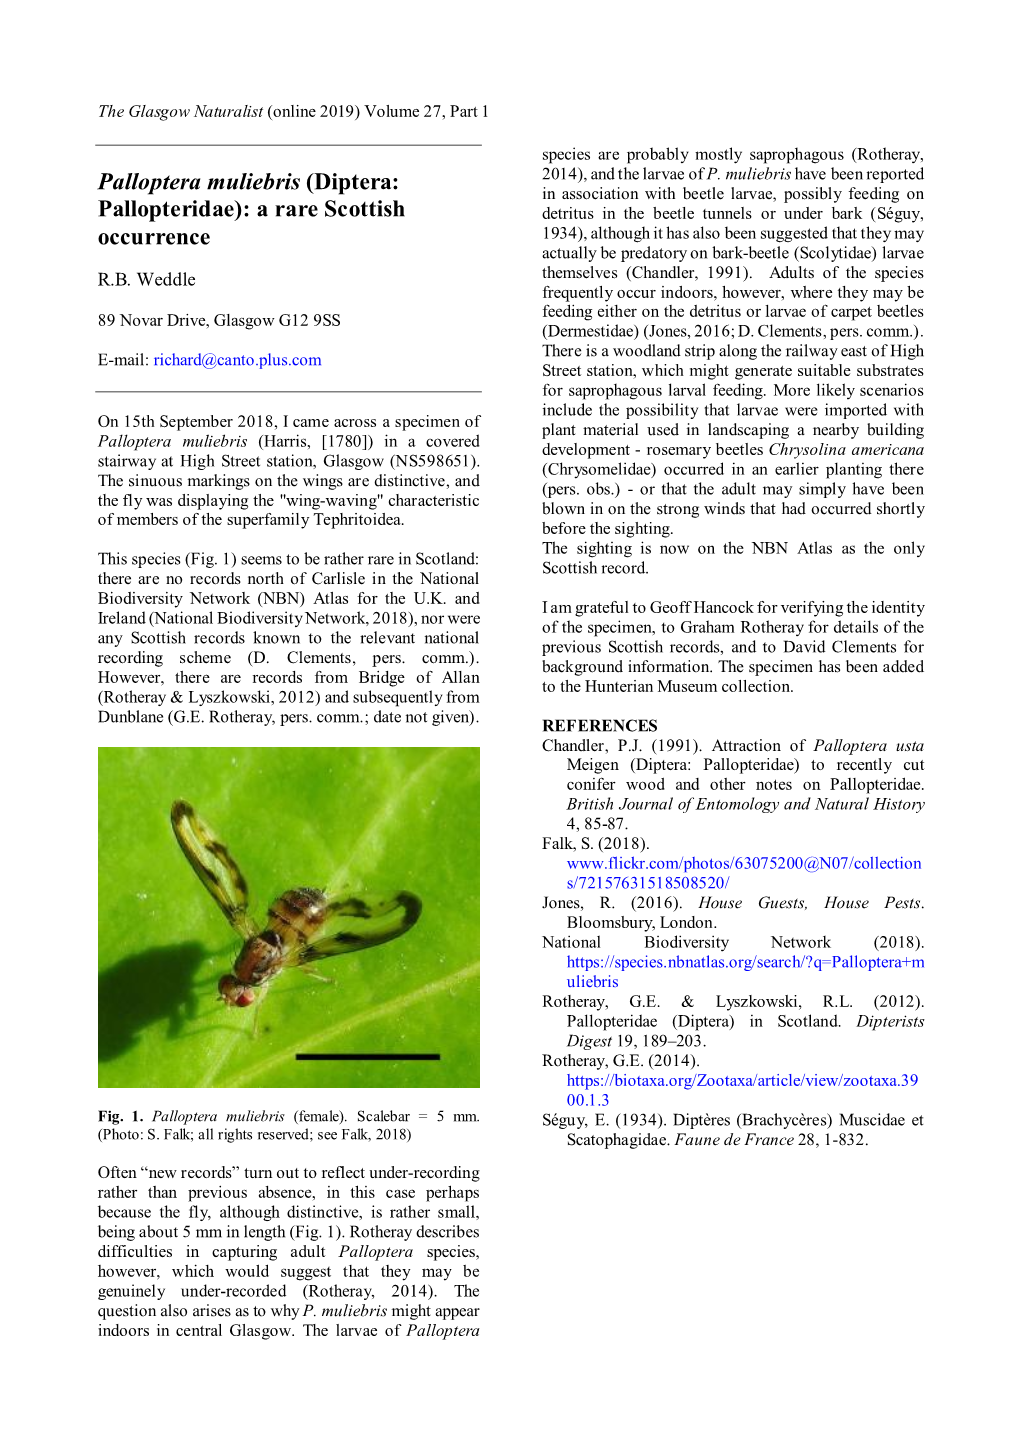 Palloptera Muliebris (Diptera: Pallopteridae): a Rare Scottish Occurrence